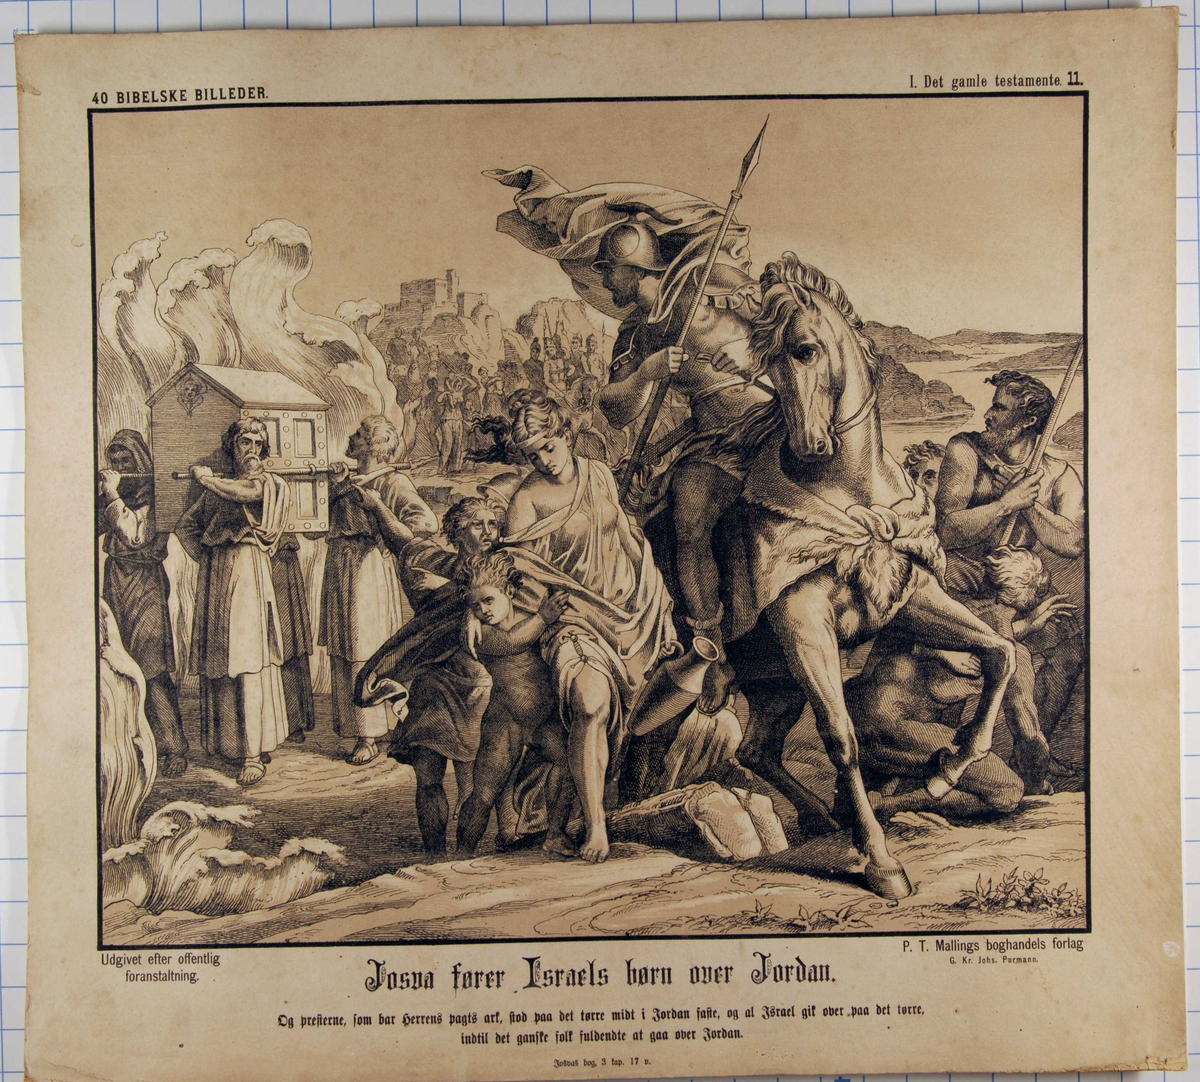 Josva fører Israels barn over Jordan.